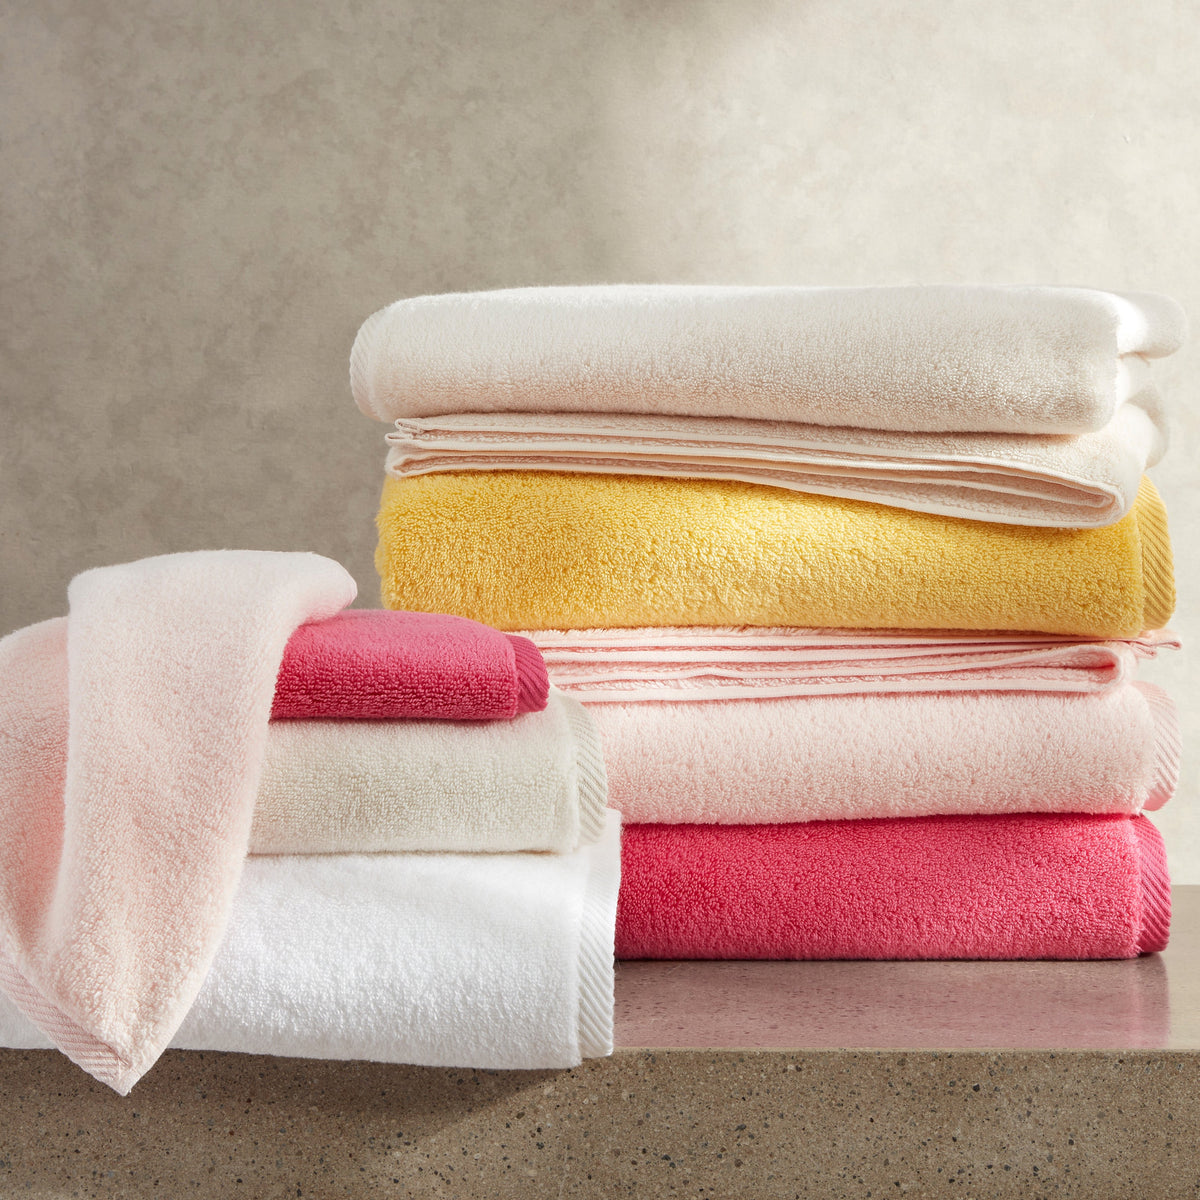 https://flandb.com/cdn/shop/products/Matouk-Bath-Milagro-Towels-Yellow-Pink-Stack_7be54c0d-d187-4962-b0b2-125bb0cfdbd0_1200x.jpg?v=1704282491